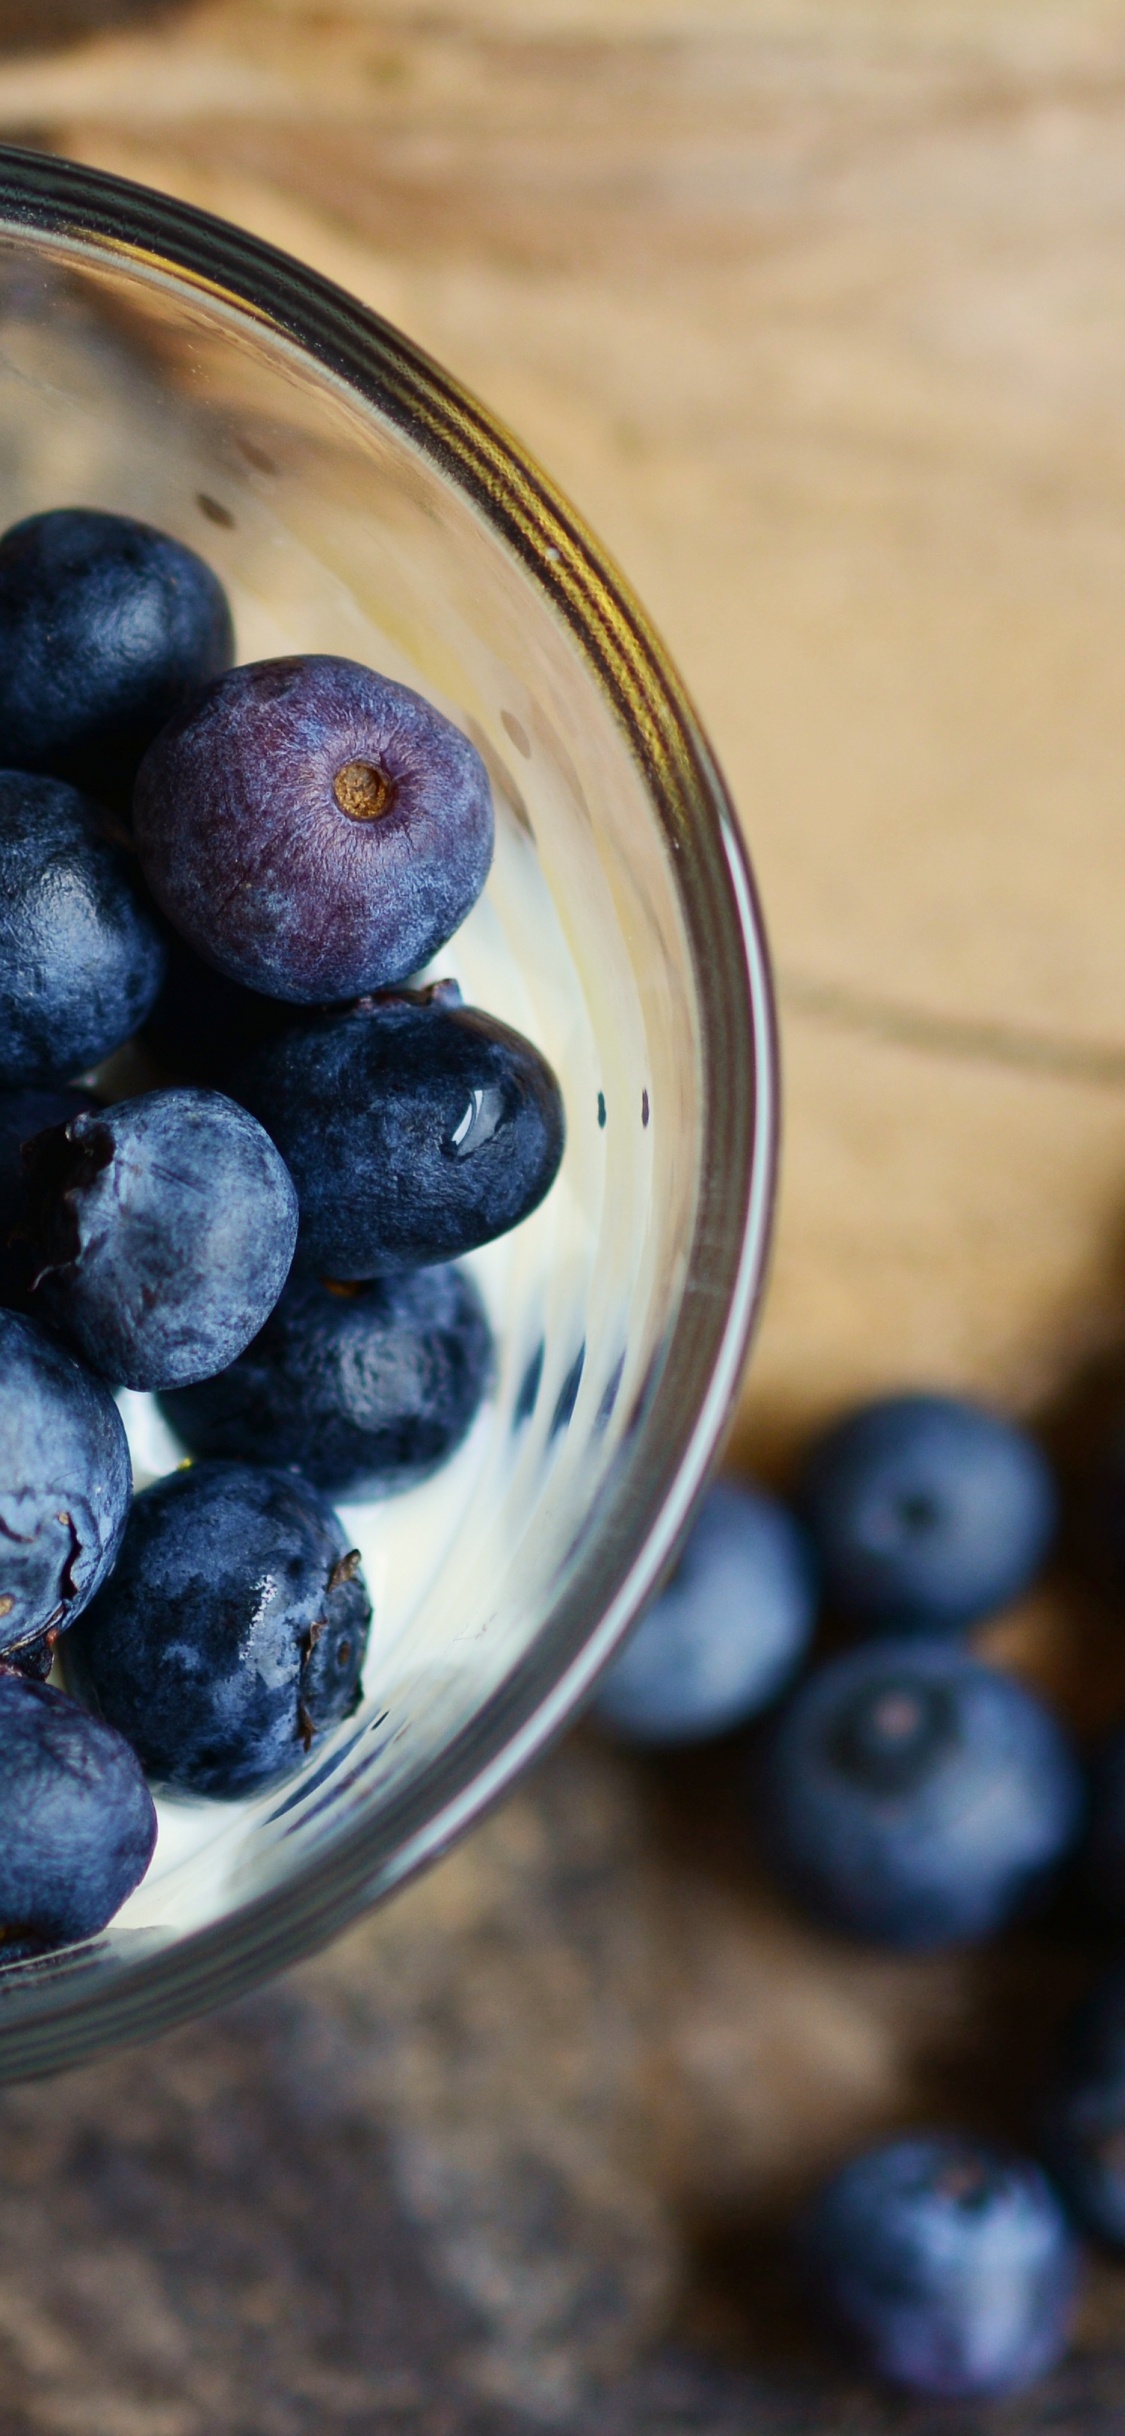 蓝莓, 食品, 梅斯皮诺亚, 营养, 健康 壁纸 1125x2436 允许